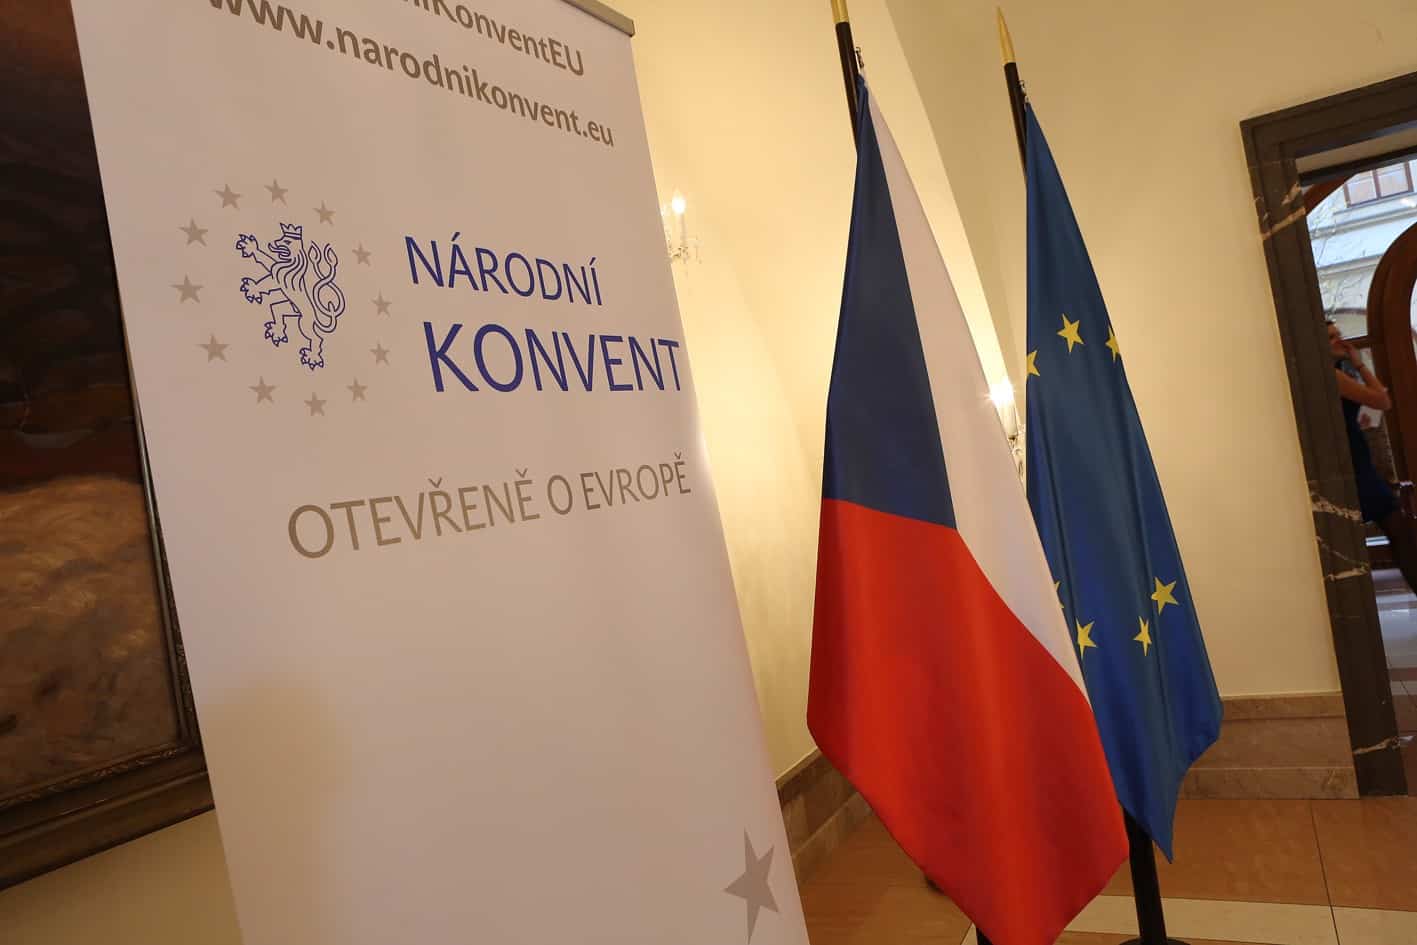 Přečtete si více ze článku KULATÝ STŮL: Konference o buducnosti Evropy z pohledu České republiky